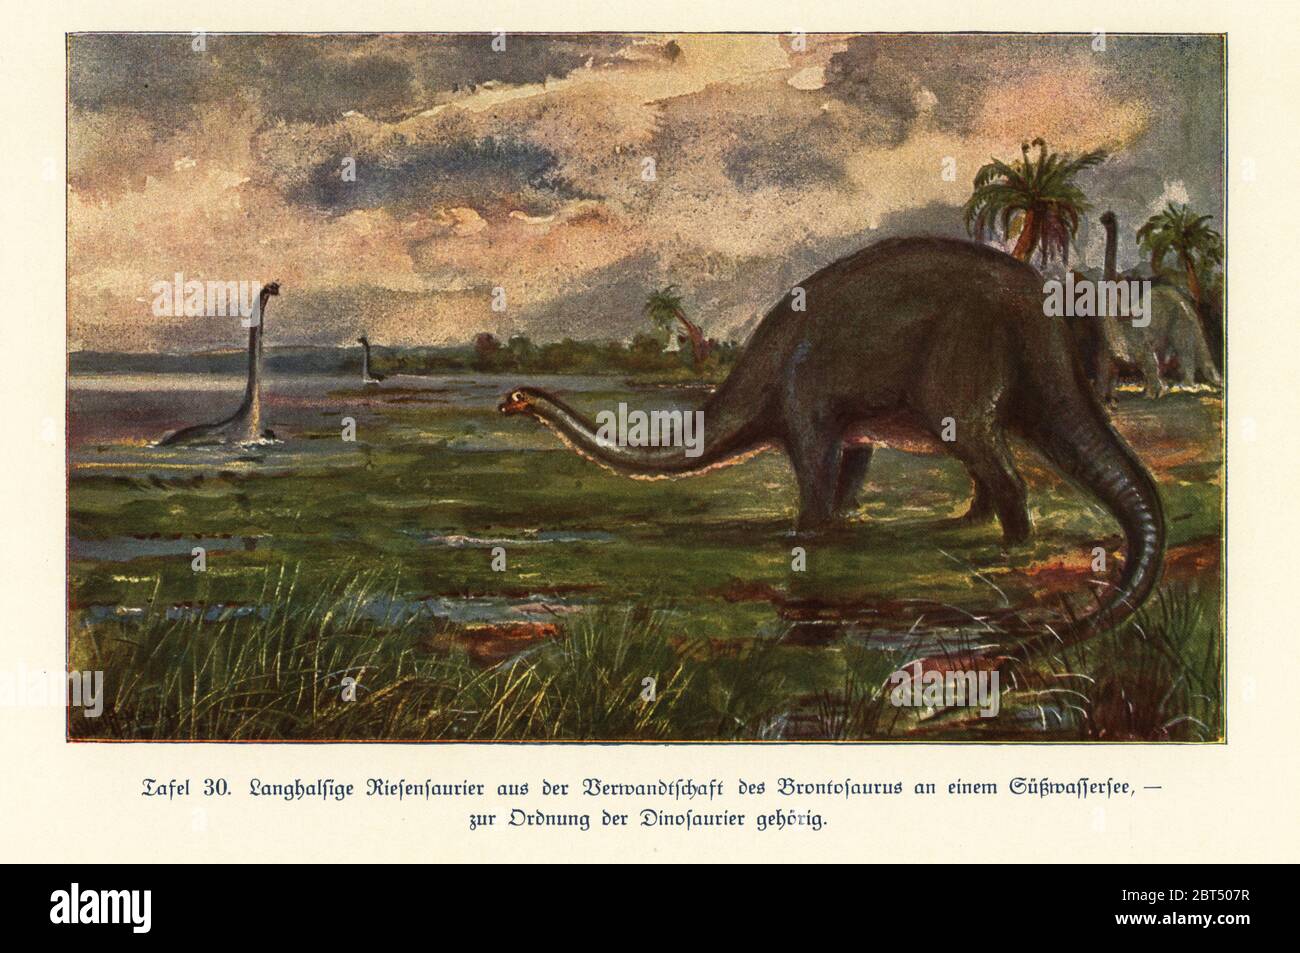 Riproduzione di dinosauri giganti del genere Brontosaurus in un lago d'acqua dolce, Jurassic. Stampa a colori dopo un'illustrazione di Hugo Wolff-Maage di Wilhelm Bolsches Das Leben der Urwelt, vita preistorica, Georg Dollheimer, Lipsia, 1932. Foto Stock